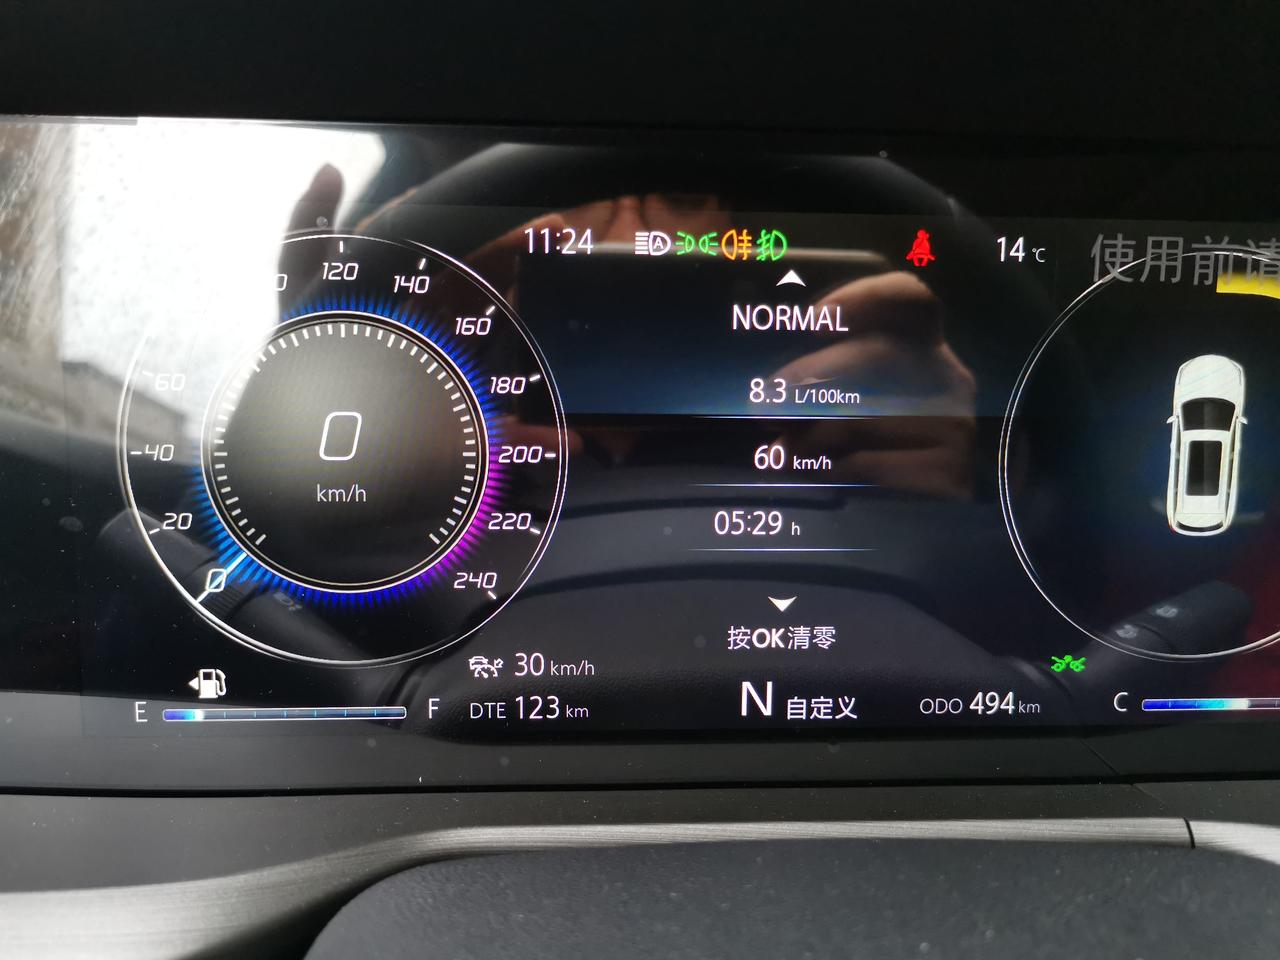 长安CS75 PLUS 中控屏那里一直显示油耗、速度、时间，怎么让它显示，显示一个汽车呢。就是我现在是图一得样子，我想显